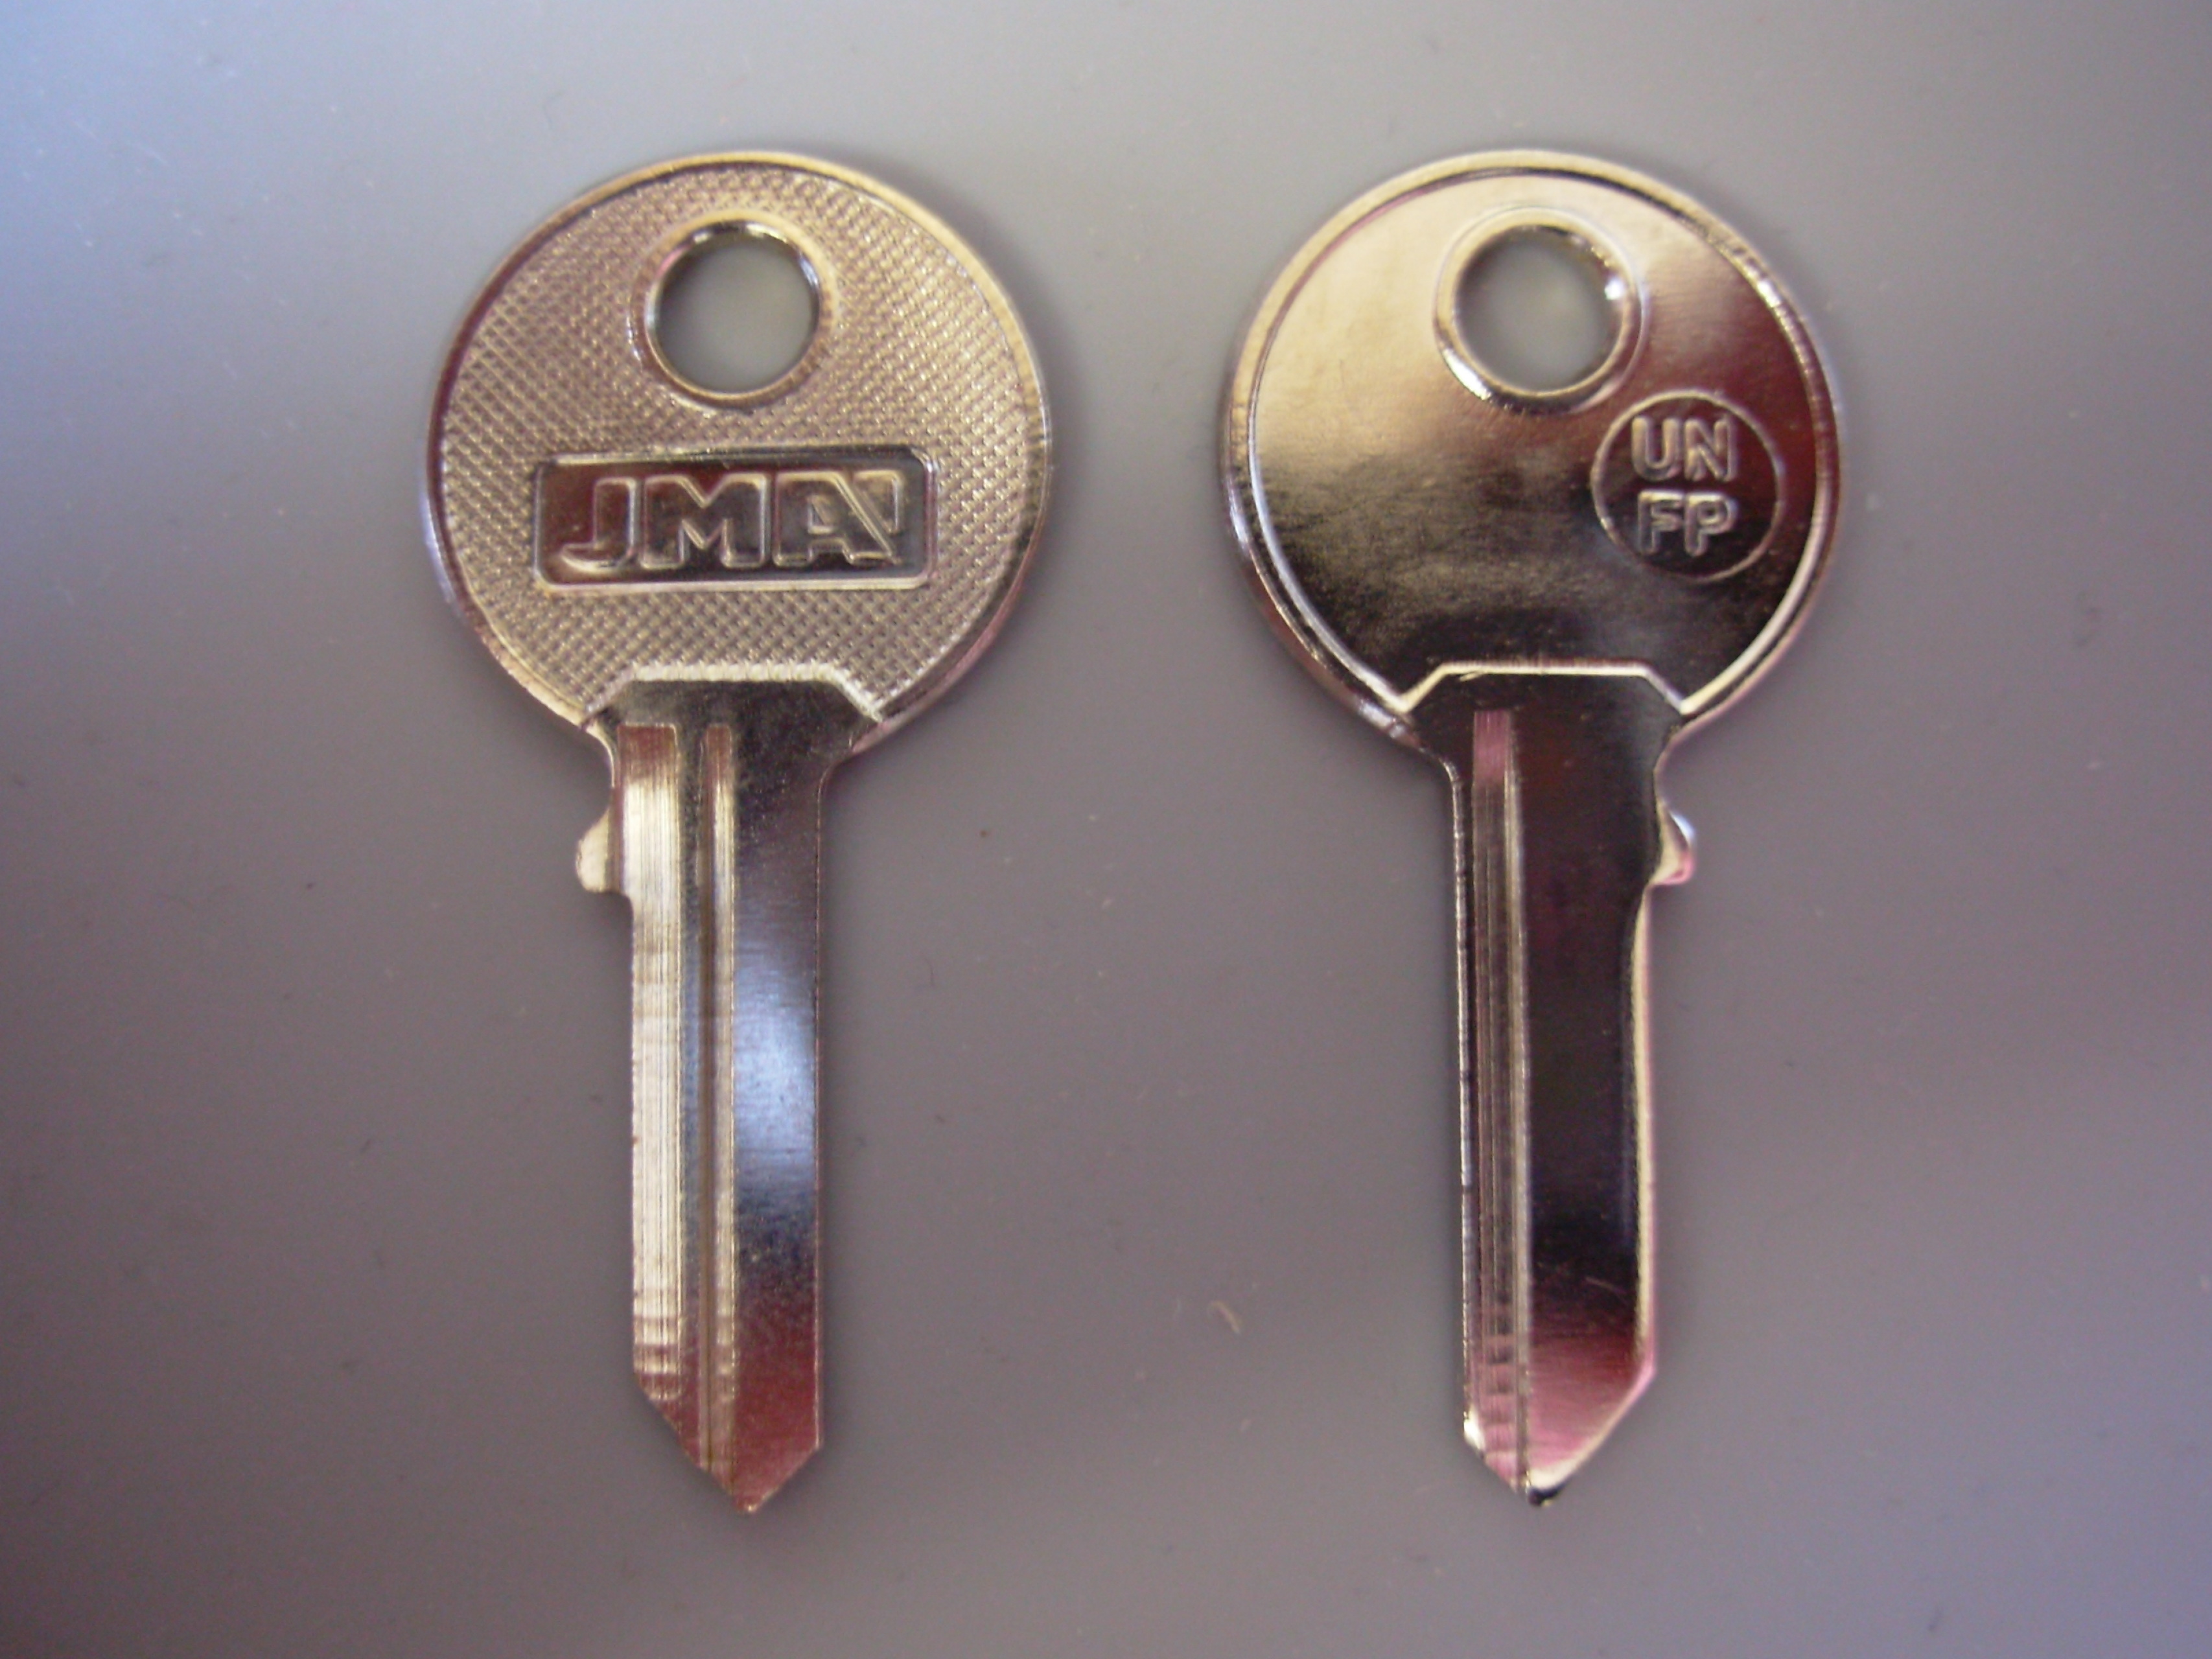 Henderson fp626 to fp750 Garage Door Replacement Keys Cut to code 